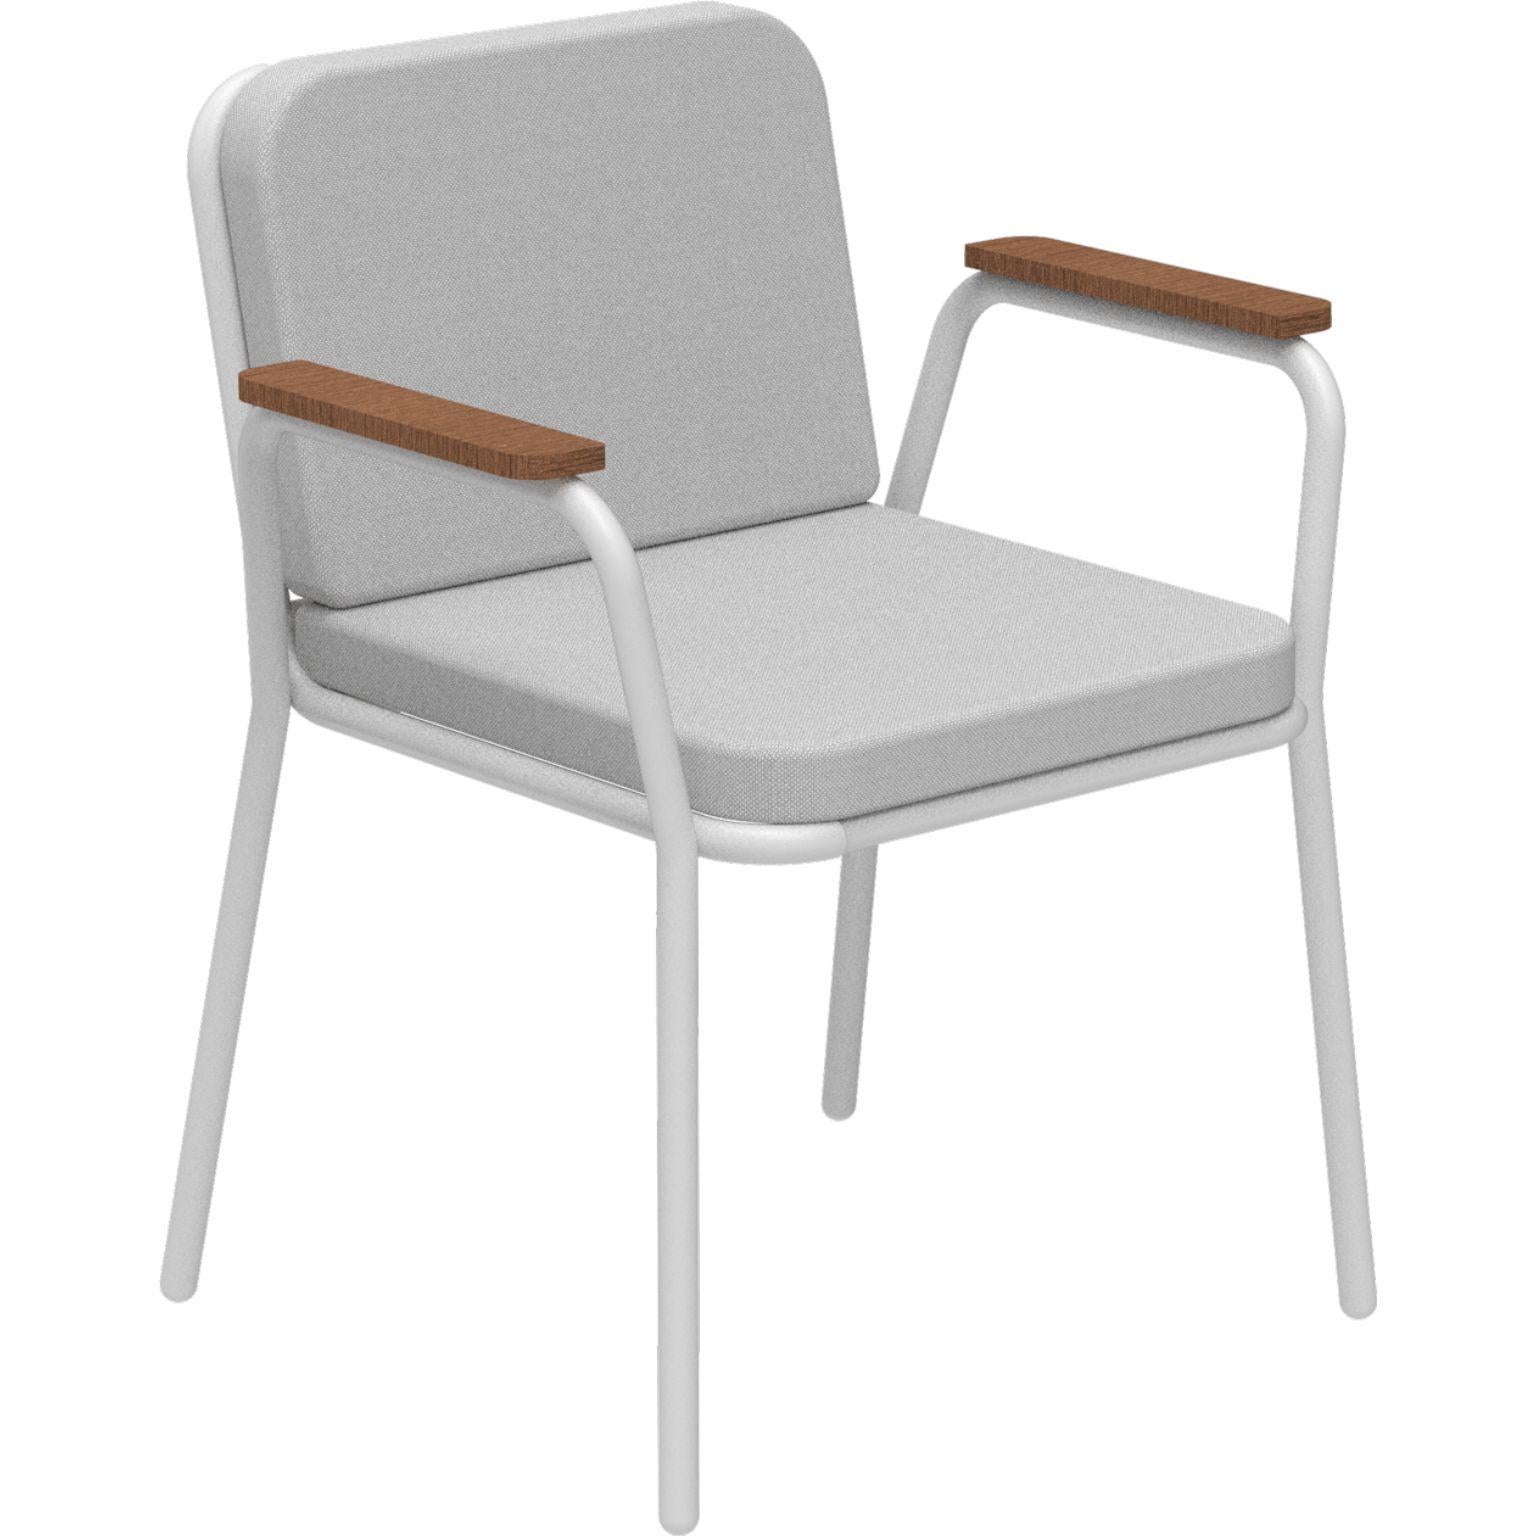 Nature Weißer Sessel von MOWEE
Abmessungen: T60 x B67 x H83 cm (Sitzhöhe 42 cm).
MATERIAL: Aluminium, Polsterung und Iroko-Holz.
Gewicht: 5 kg.
Auch in verschiedenen Farben und Ausführungen erhältlich. Bitte kontaktieren Sie uns.

Eine Collection'S,